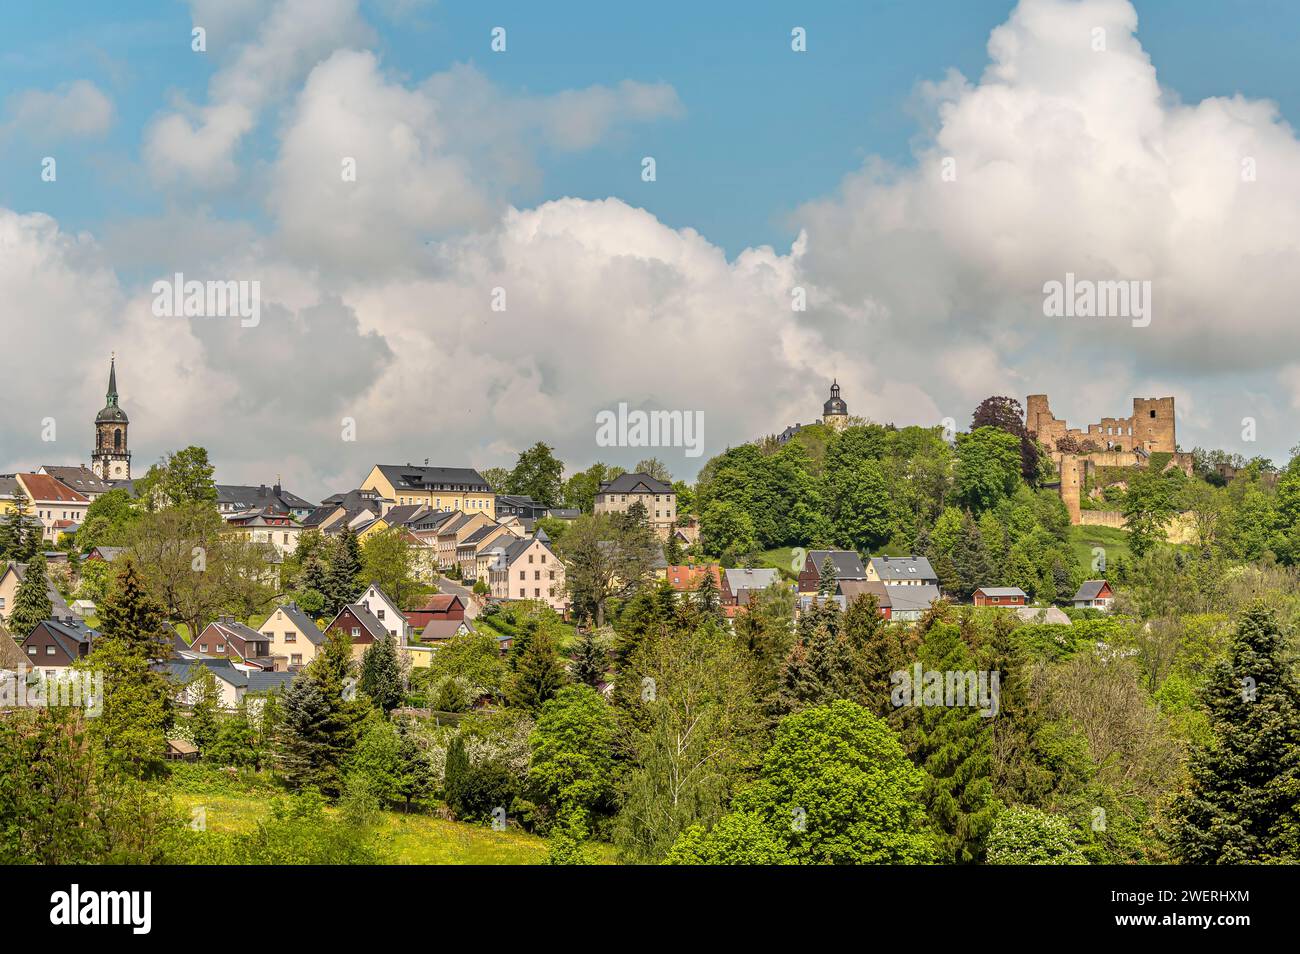 Dorf und Schloss Frauenstein im östlichen Erzgebirge, Sachsen, Deutschland Stockfoto